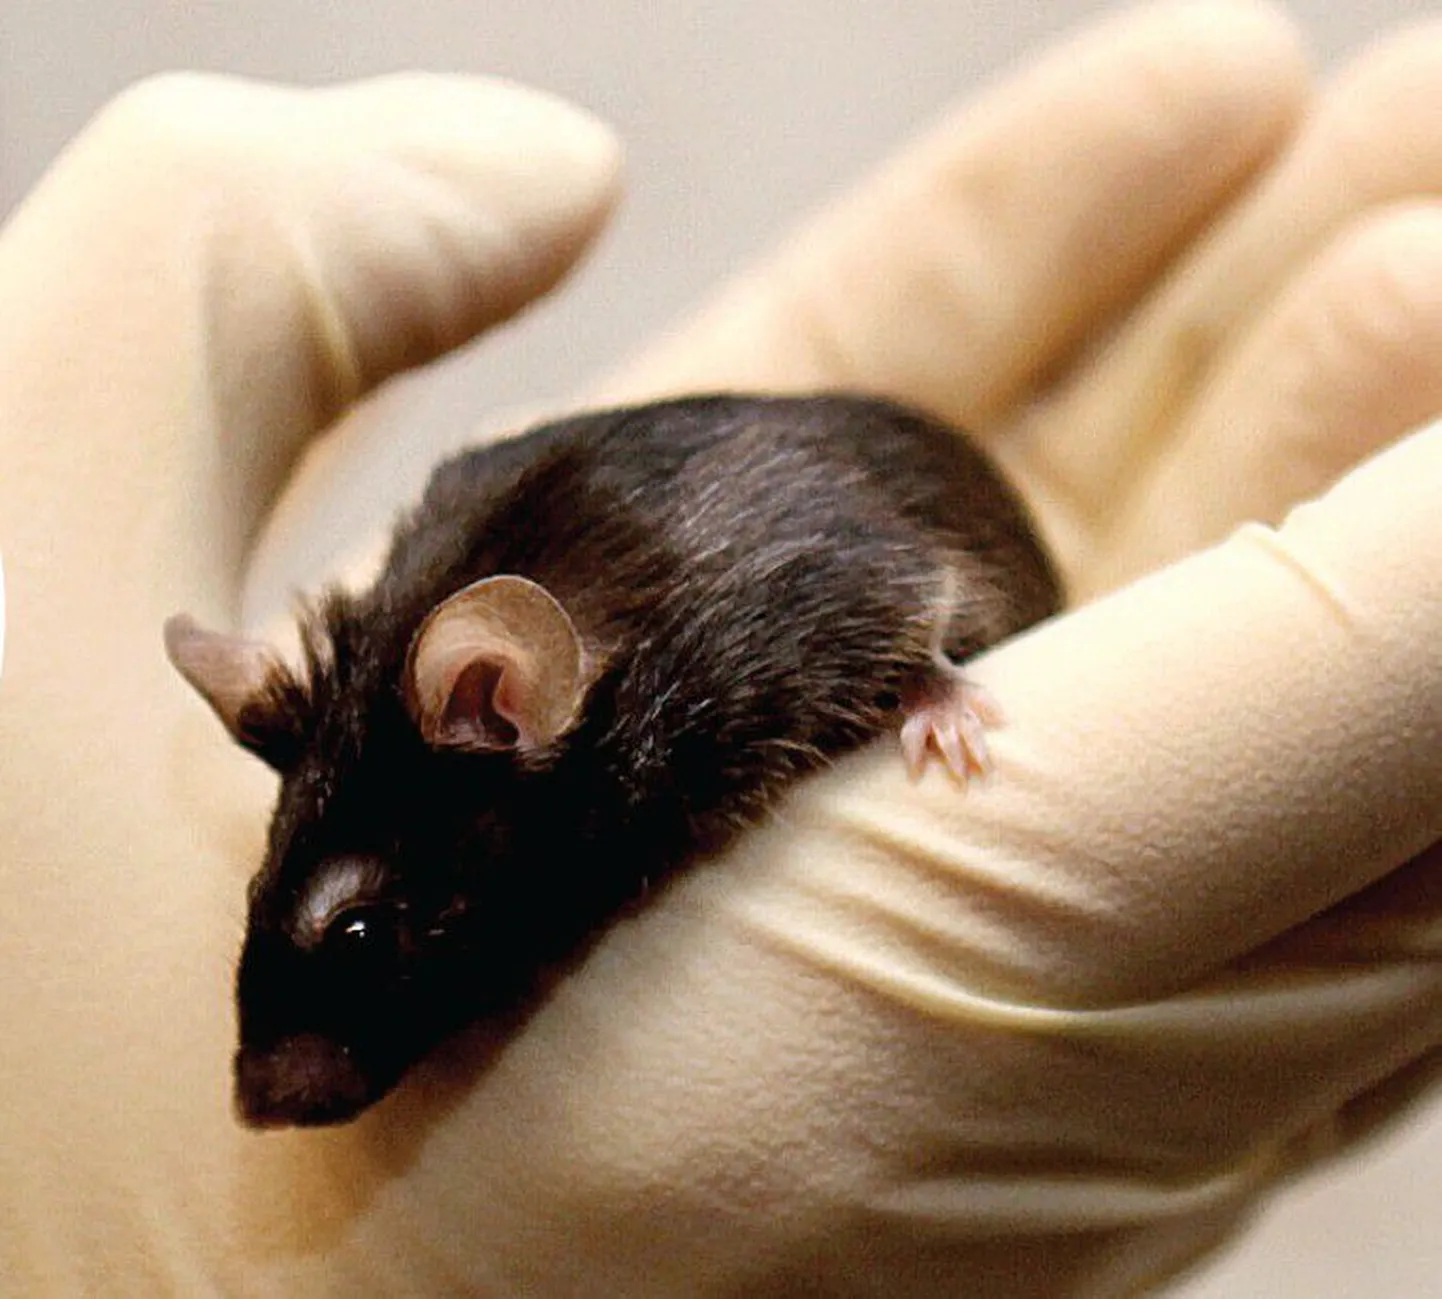 Mustakarvaline hiir liininimega C57 ei tunne peptiidretseptori puudumise tõttu valu. Tema uurimine aitab teadlastel valu paremini mõista ning otsida kroonilise valu ravi võimalusi.